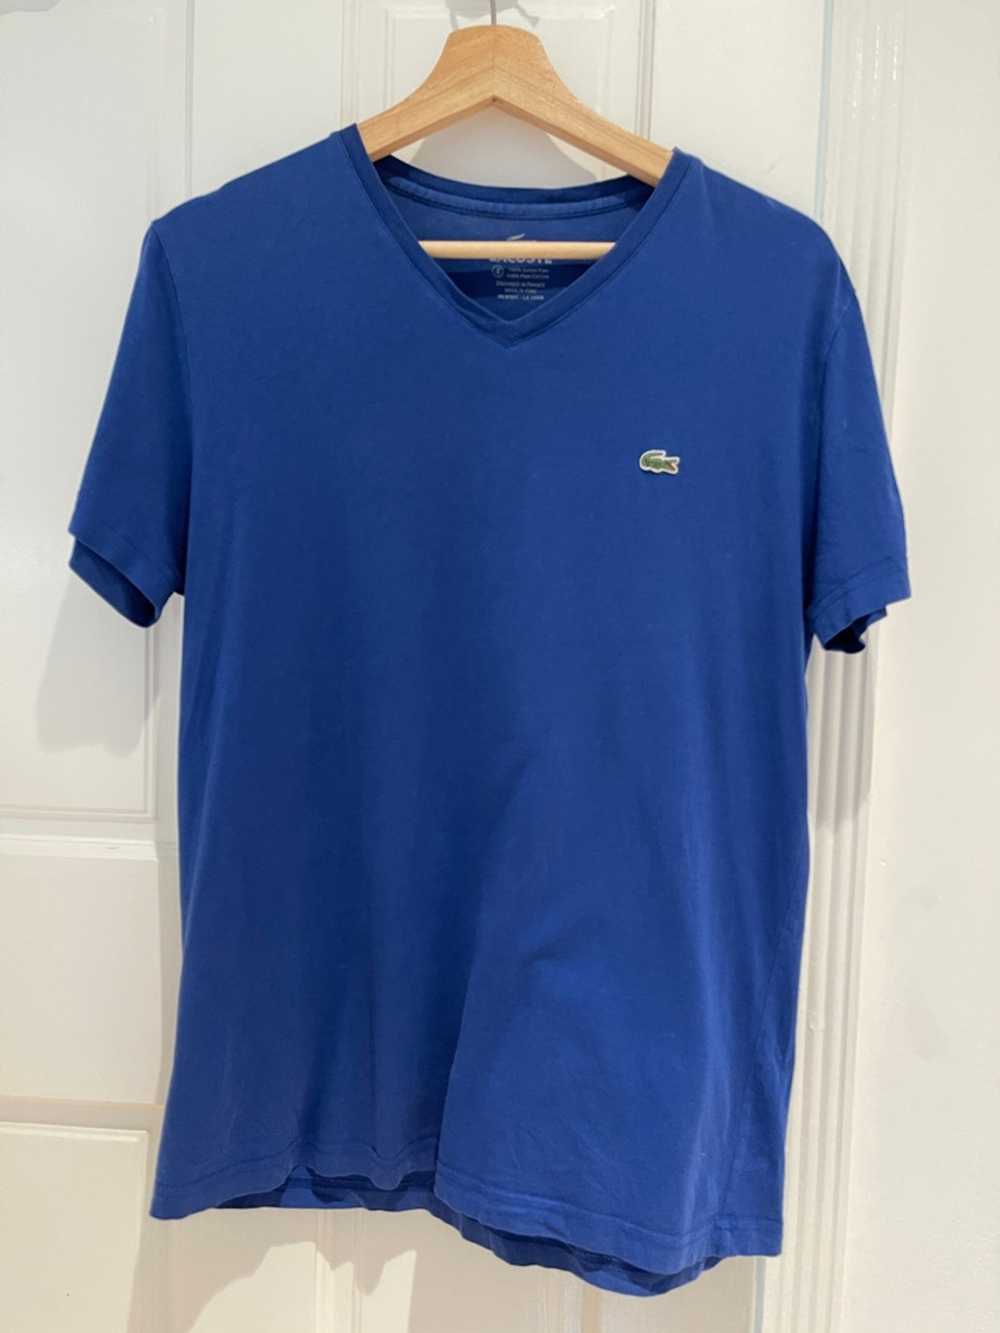 Lacoste Lacoste Pima Cotton Blue T Shirt - image 1